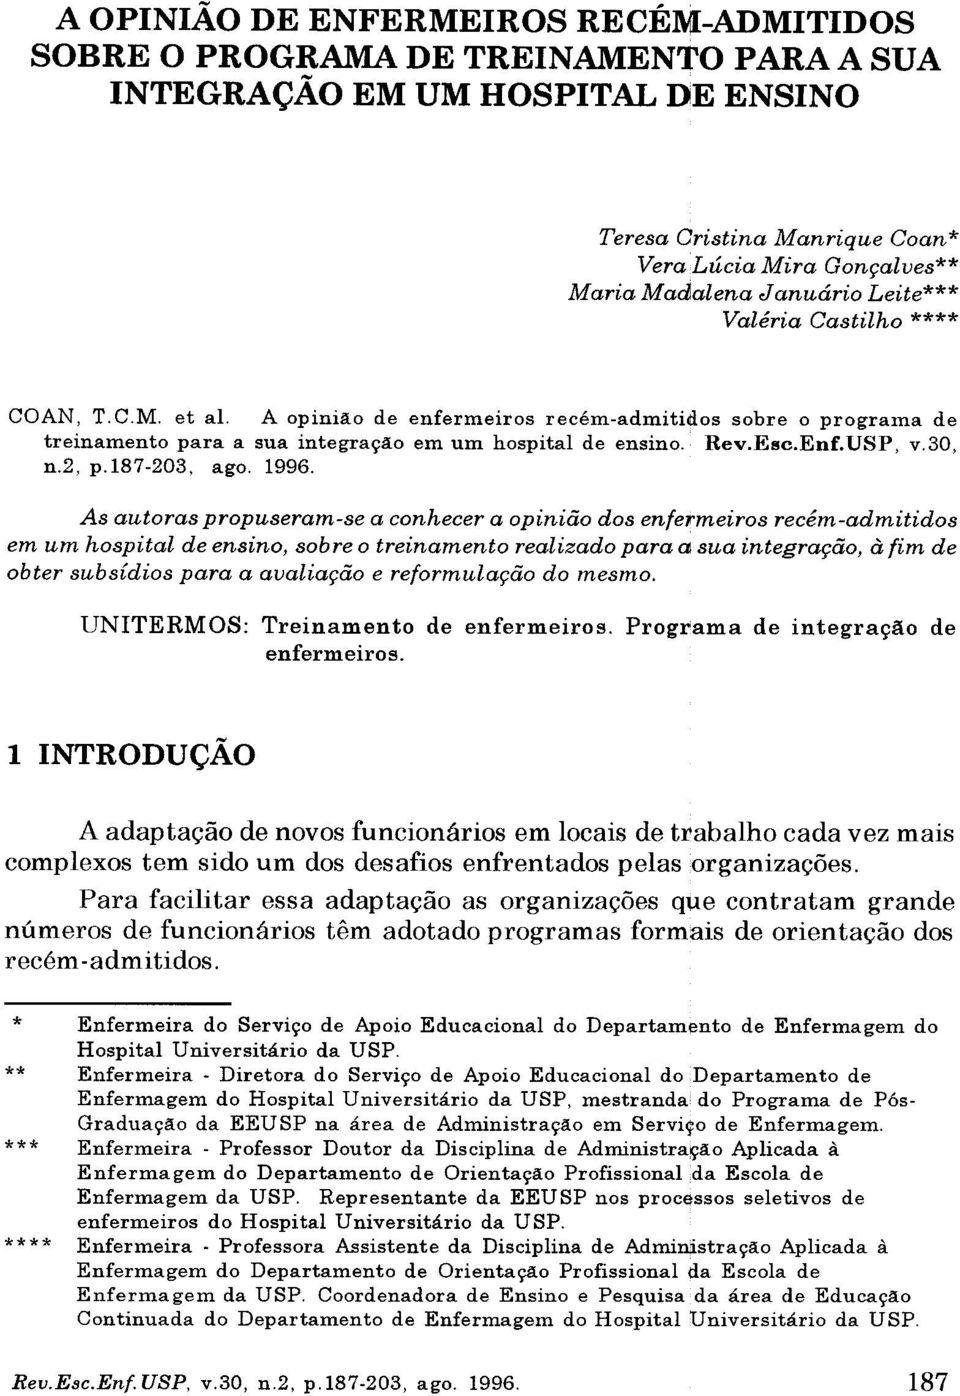 30, n.2, p. 187-203, ago. 1996.